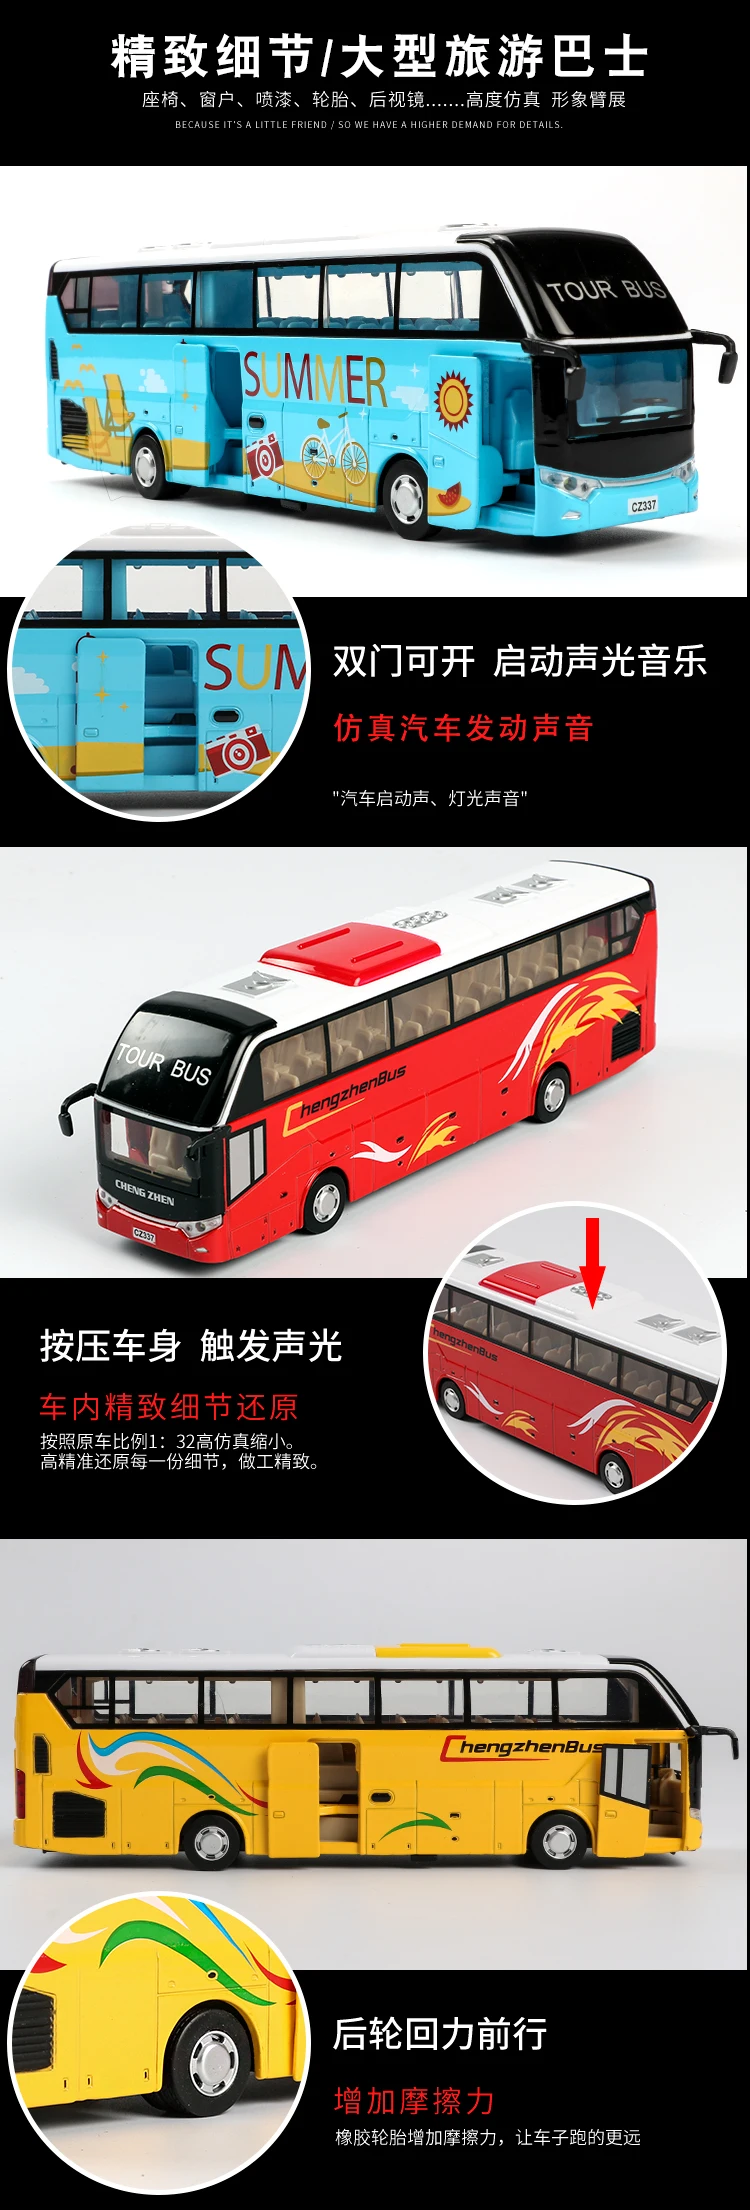 Модель моделирования детский автомобиль сплав тянуть назад двухэтажный автобус музыка и свет функция бизнес игрушки «автобус» & хобби Jsuny